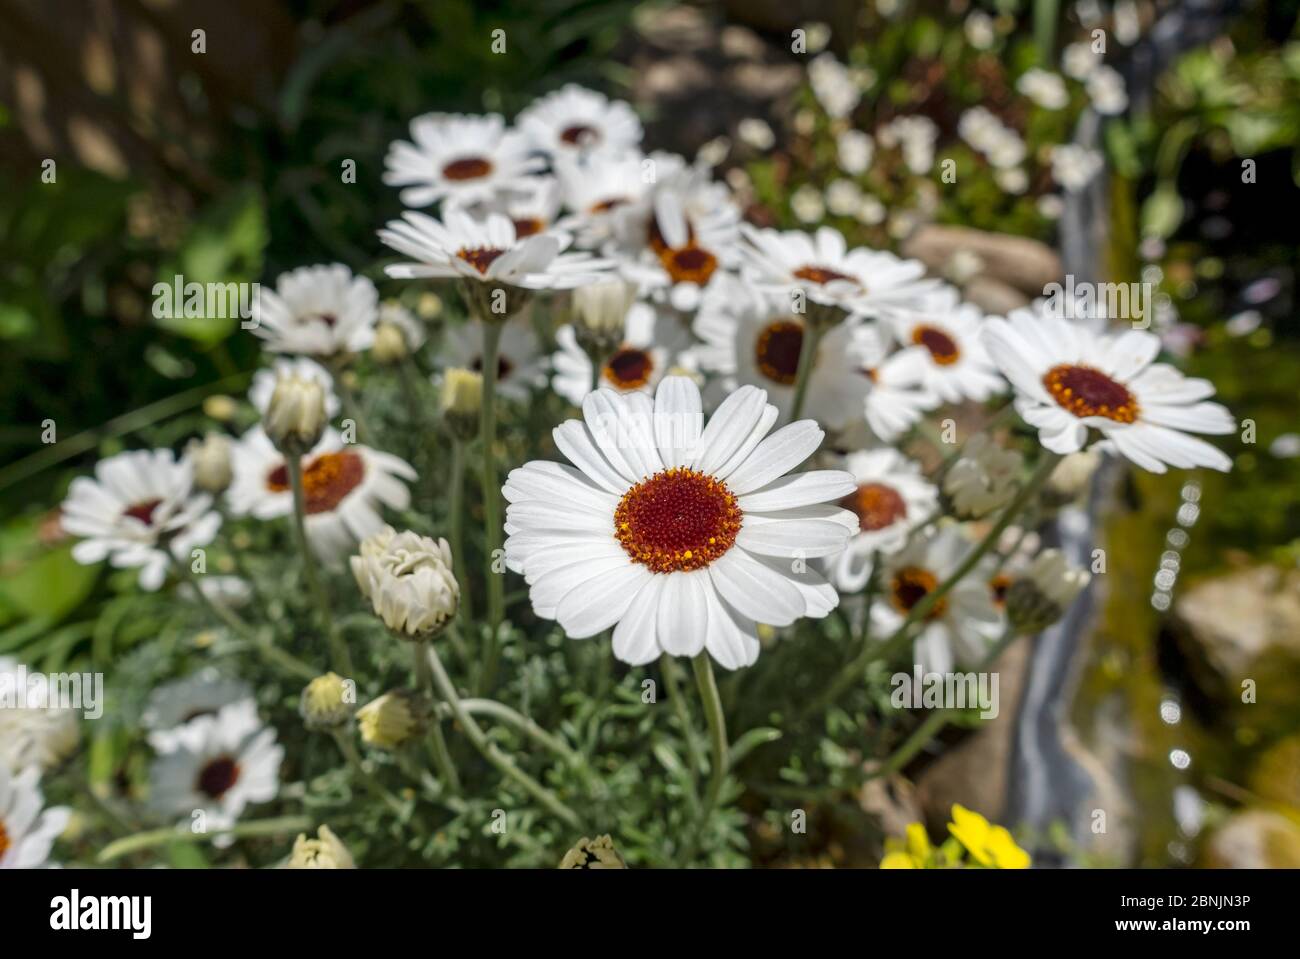 Gros plan de Rhodanthemum 'yeux africains' marguerites marocaines pâquerettes fleurs blanches fleur au printemps Angleterre Royaume-Uni Grande-Bretagne Banque D'Images